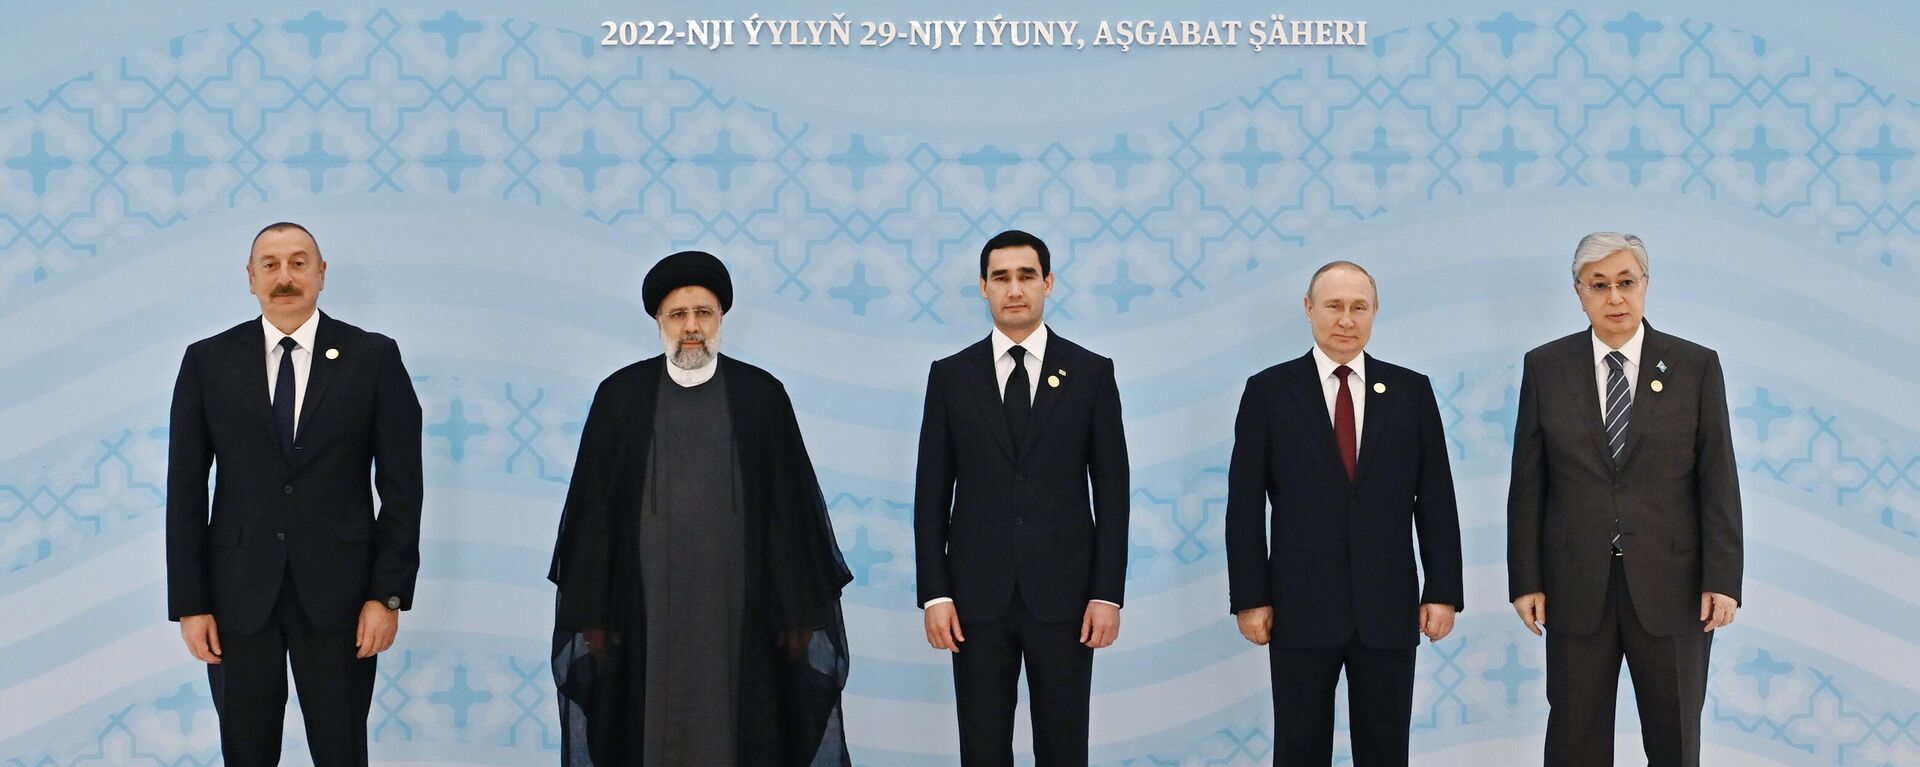 Каспийский саммит в Ашхабаде - Sputnik Азербайджан, 1920, 29.06.2022